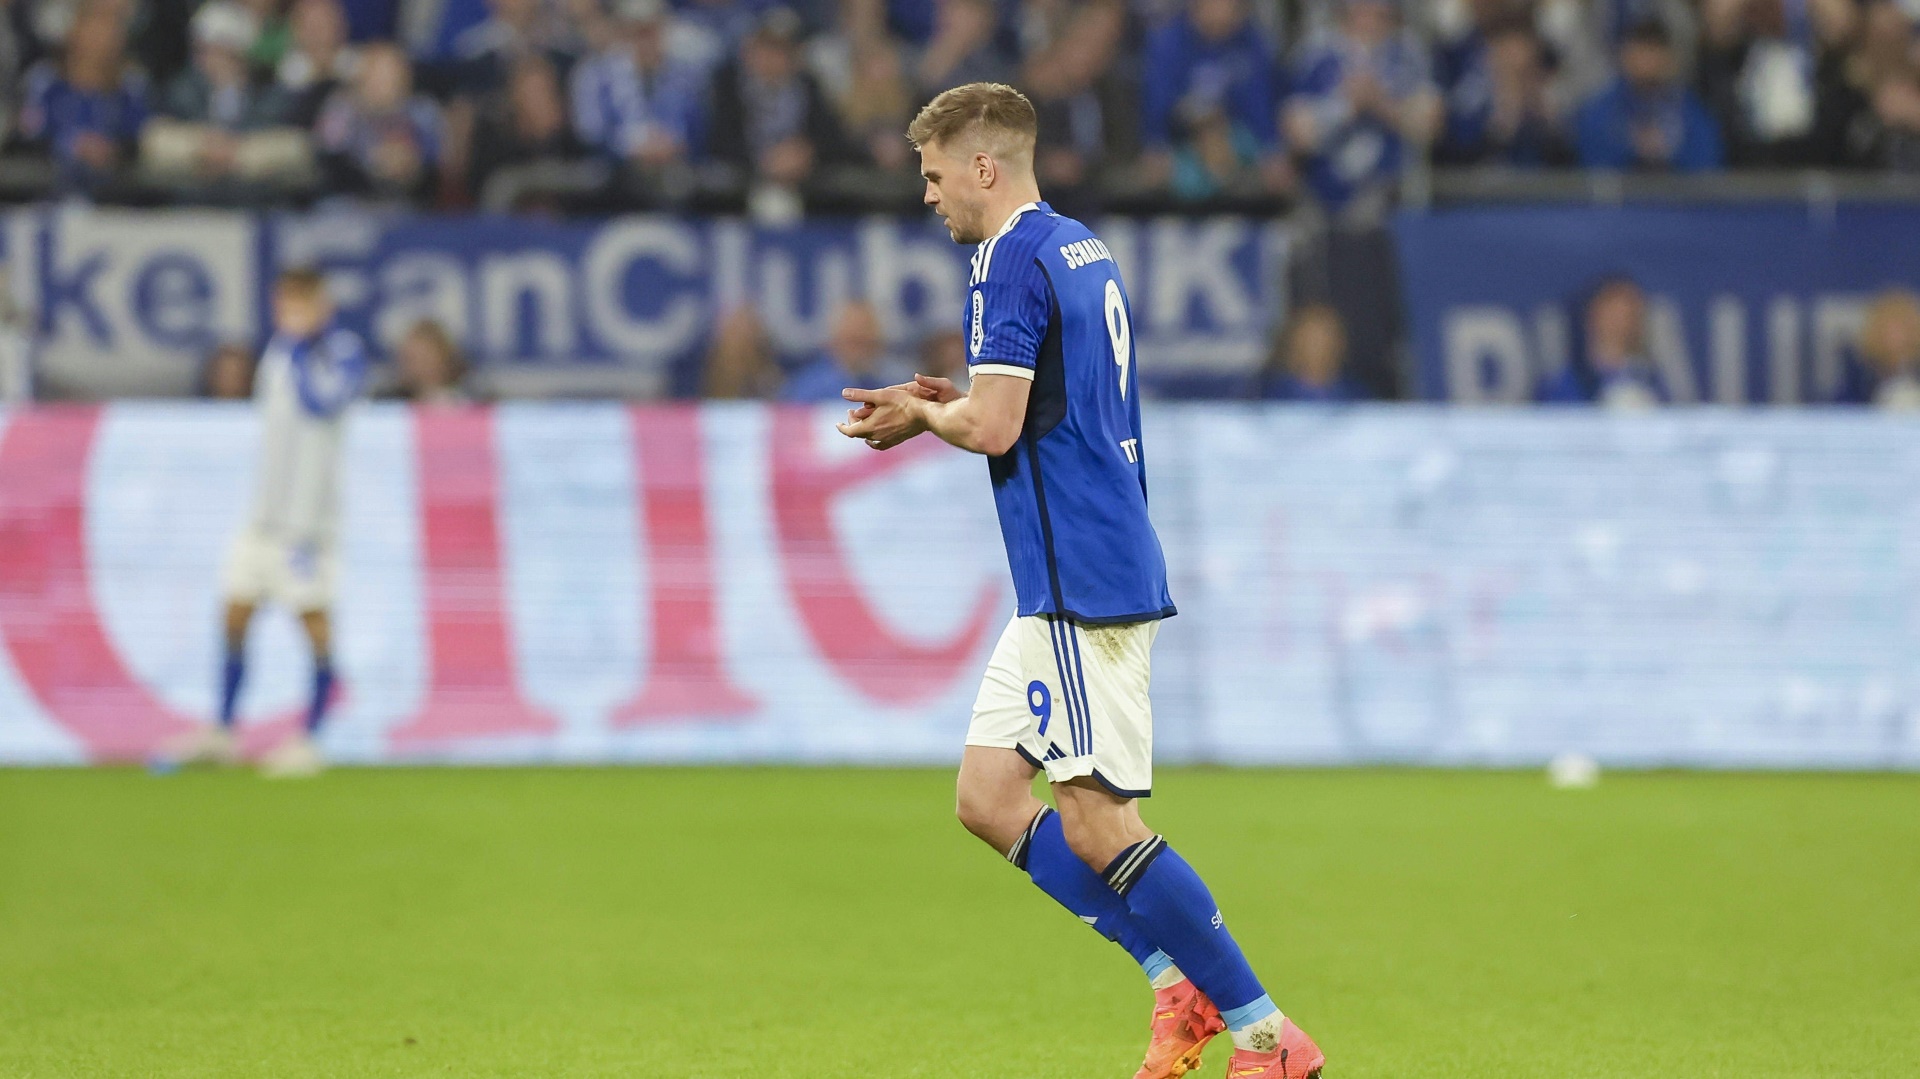 Streit um Verlegung: Osnabrück und Schalke mit Vorwürfen